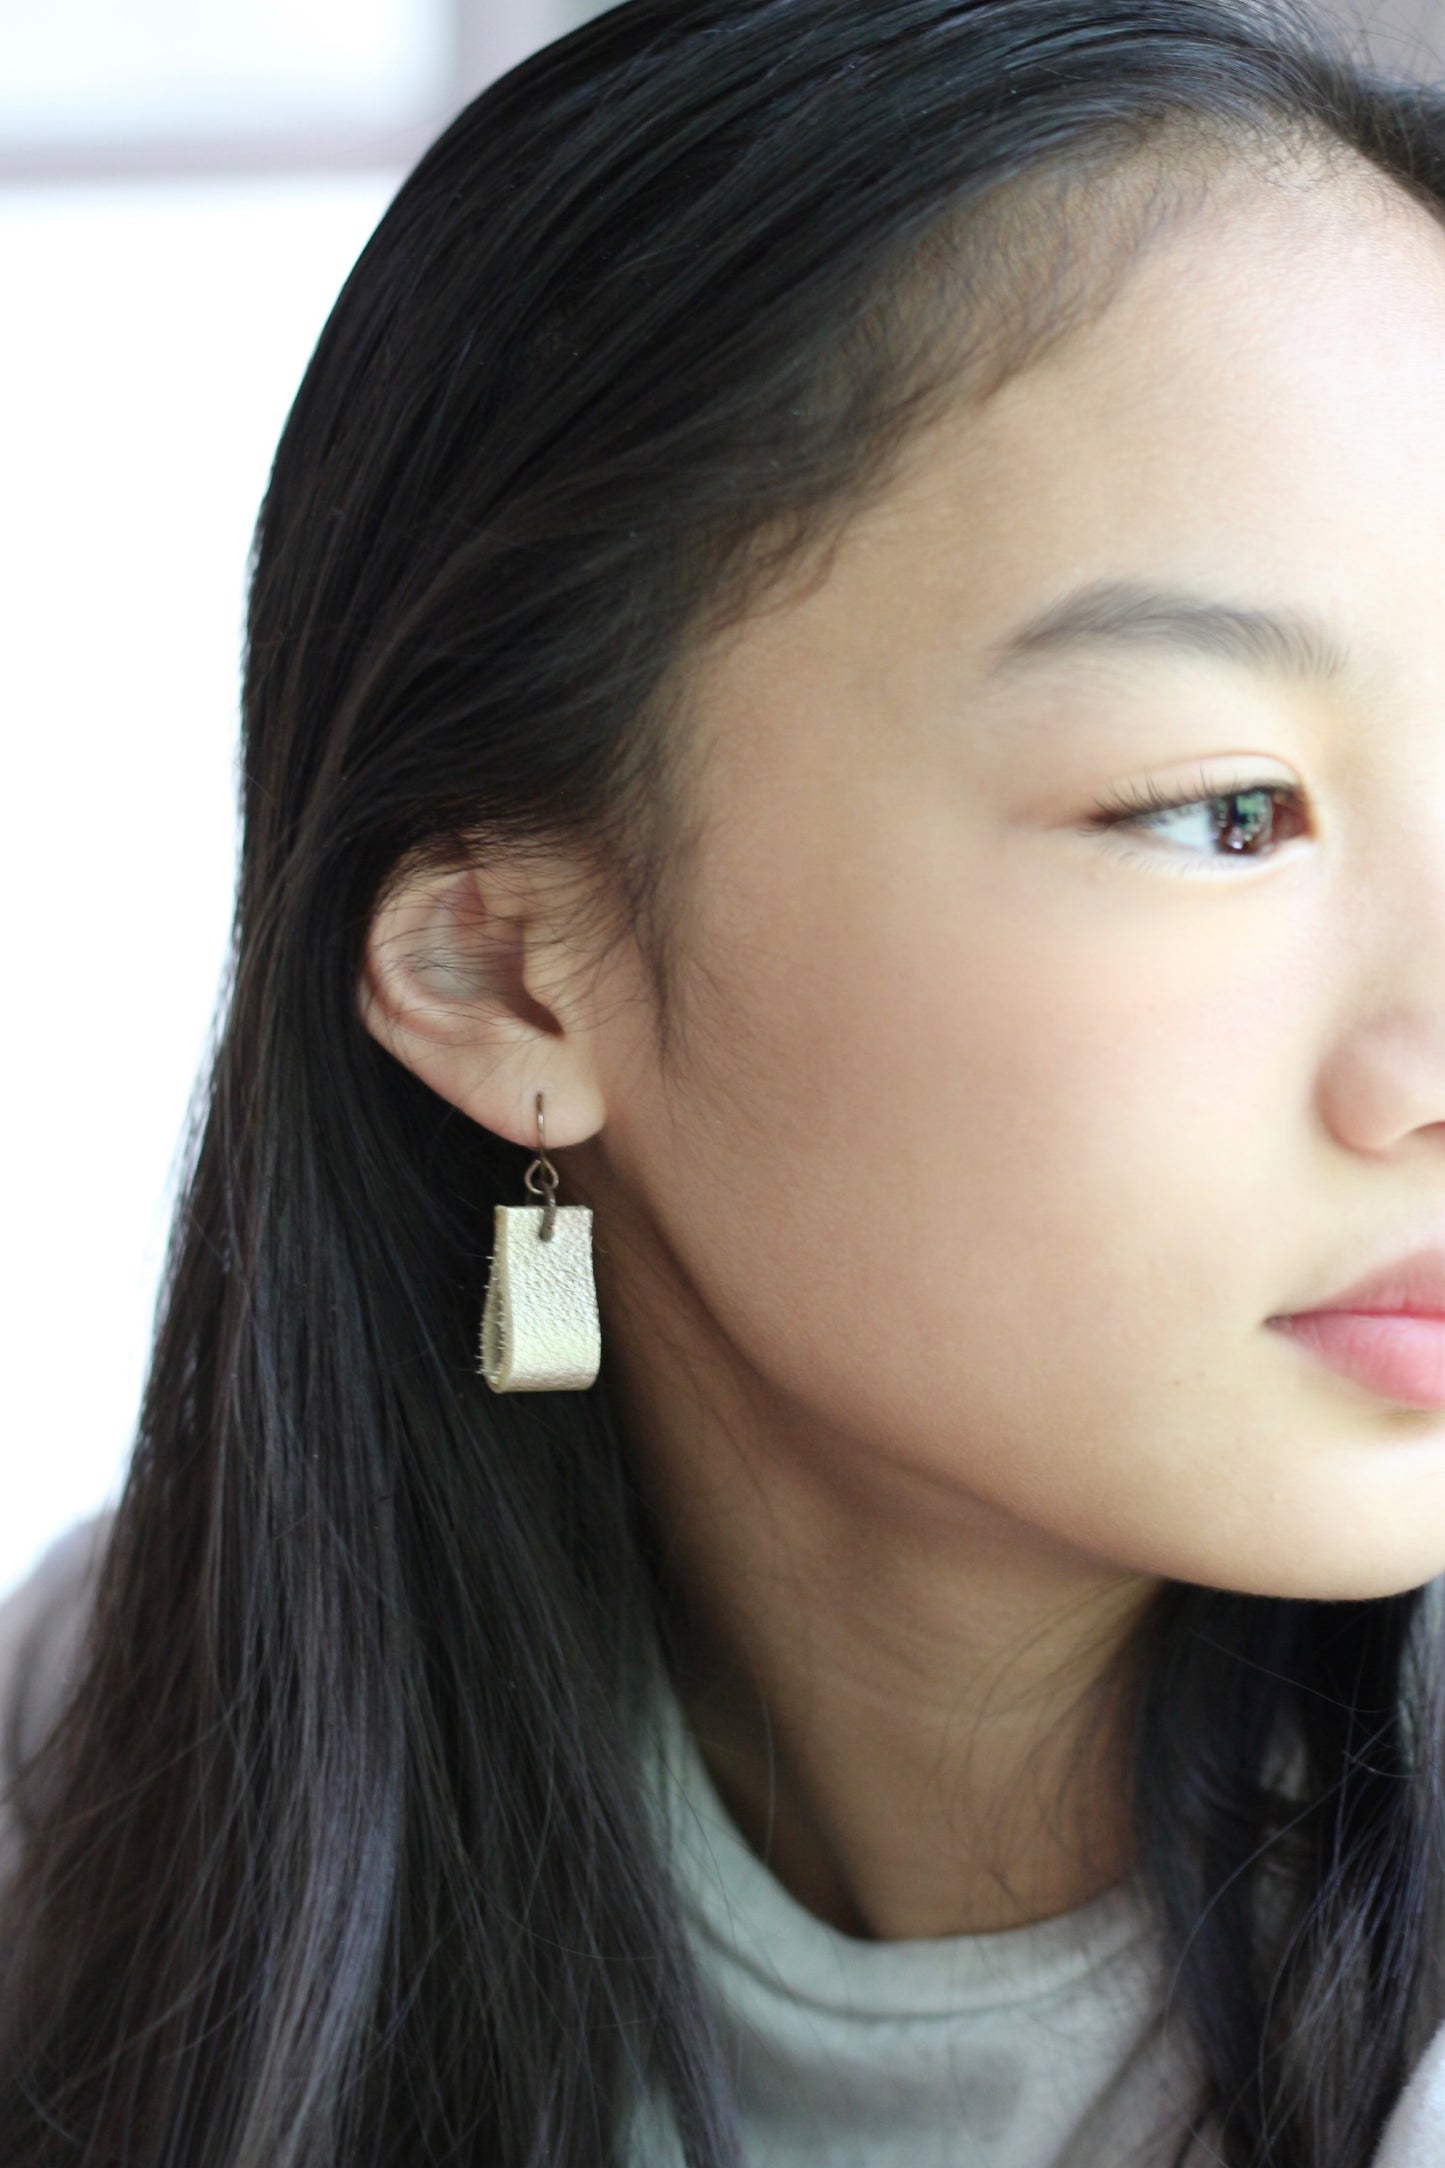 simple loop genuine leather earrings in peach shimmer